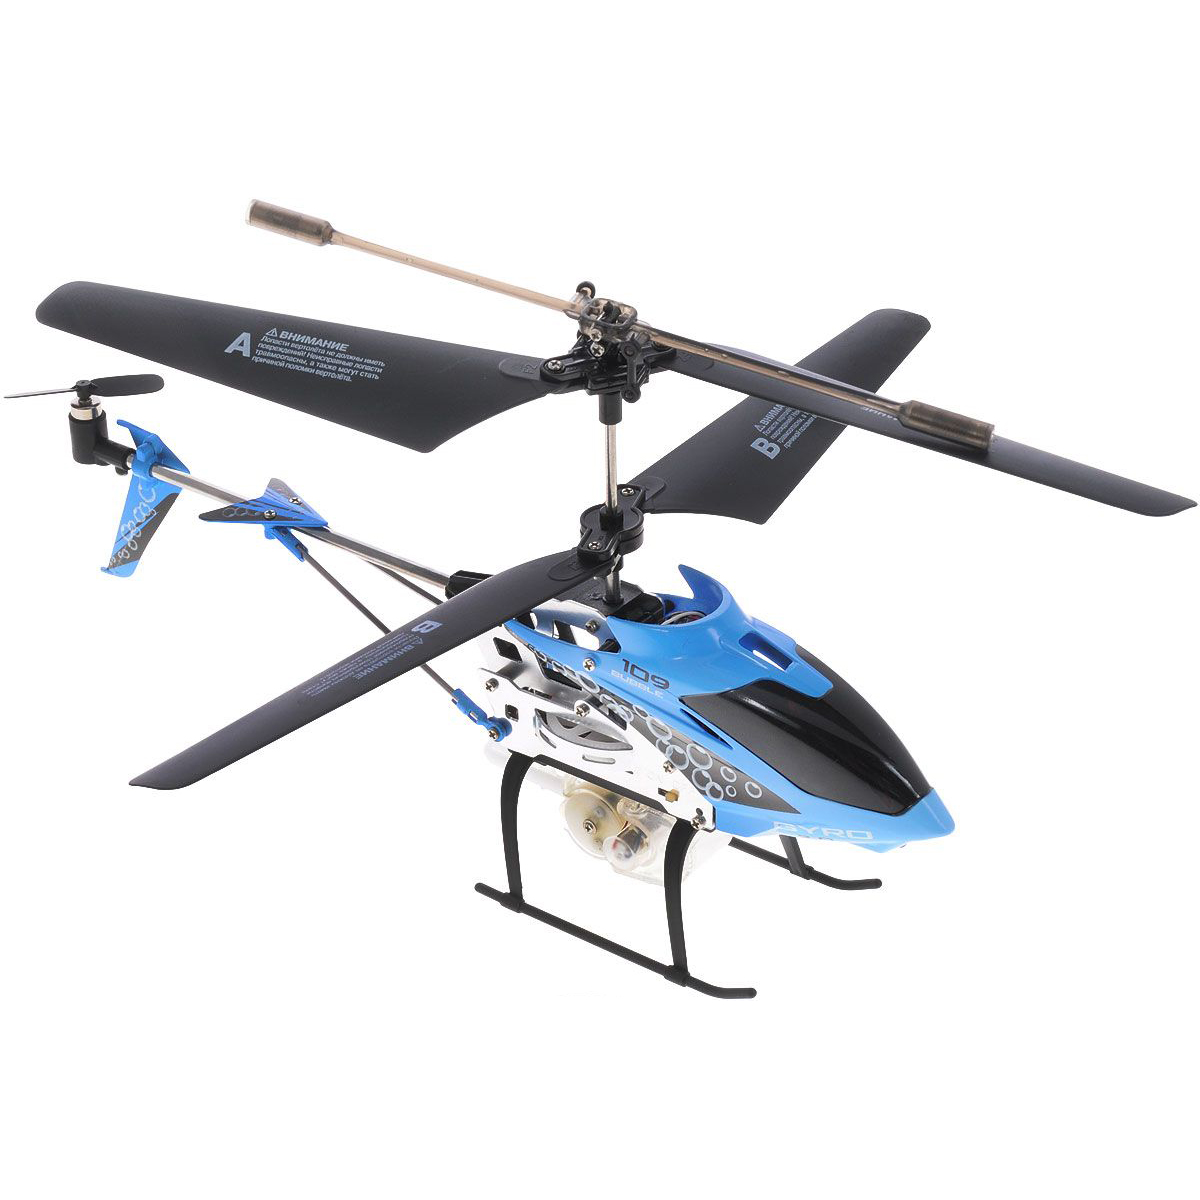 Вертолеты gyro. Радиоуправляемый вертолет Gyro 109. Вертолёт на пульте управления Gyro 109. Вертолет 1 Toy Gyro-Wi-Fi (т57708) 29 см. Heli вертолет игрушка Helicopter.